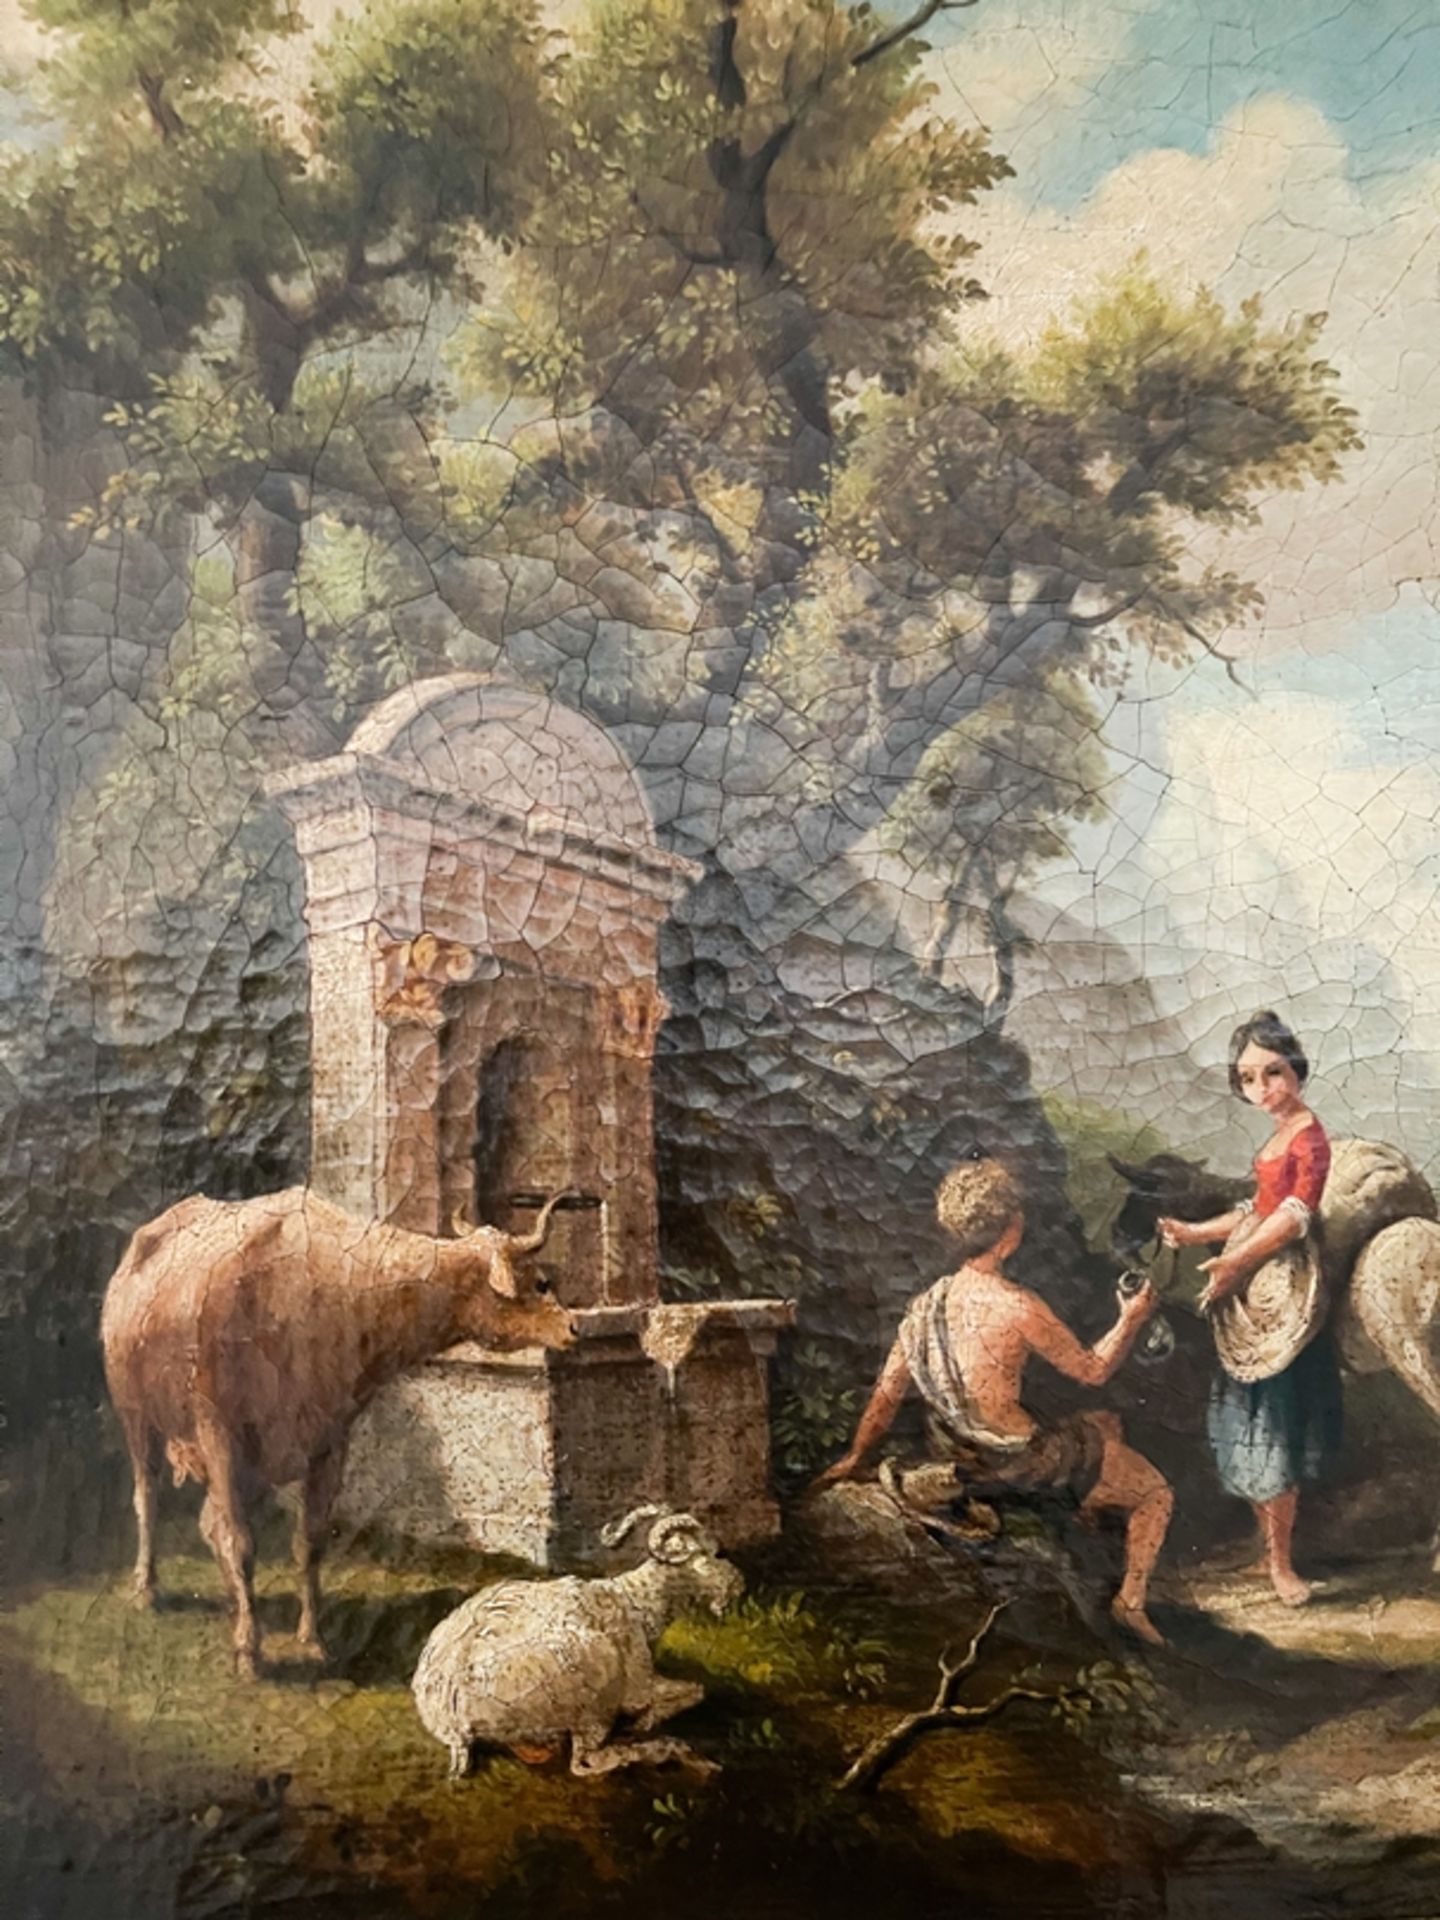 Landschaftsgemälde "Personen und Ziegen am Brunnen" - Bild 3 aus 5